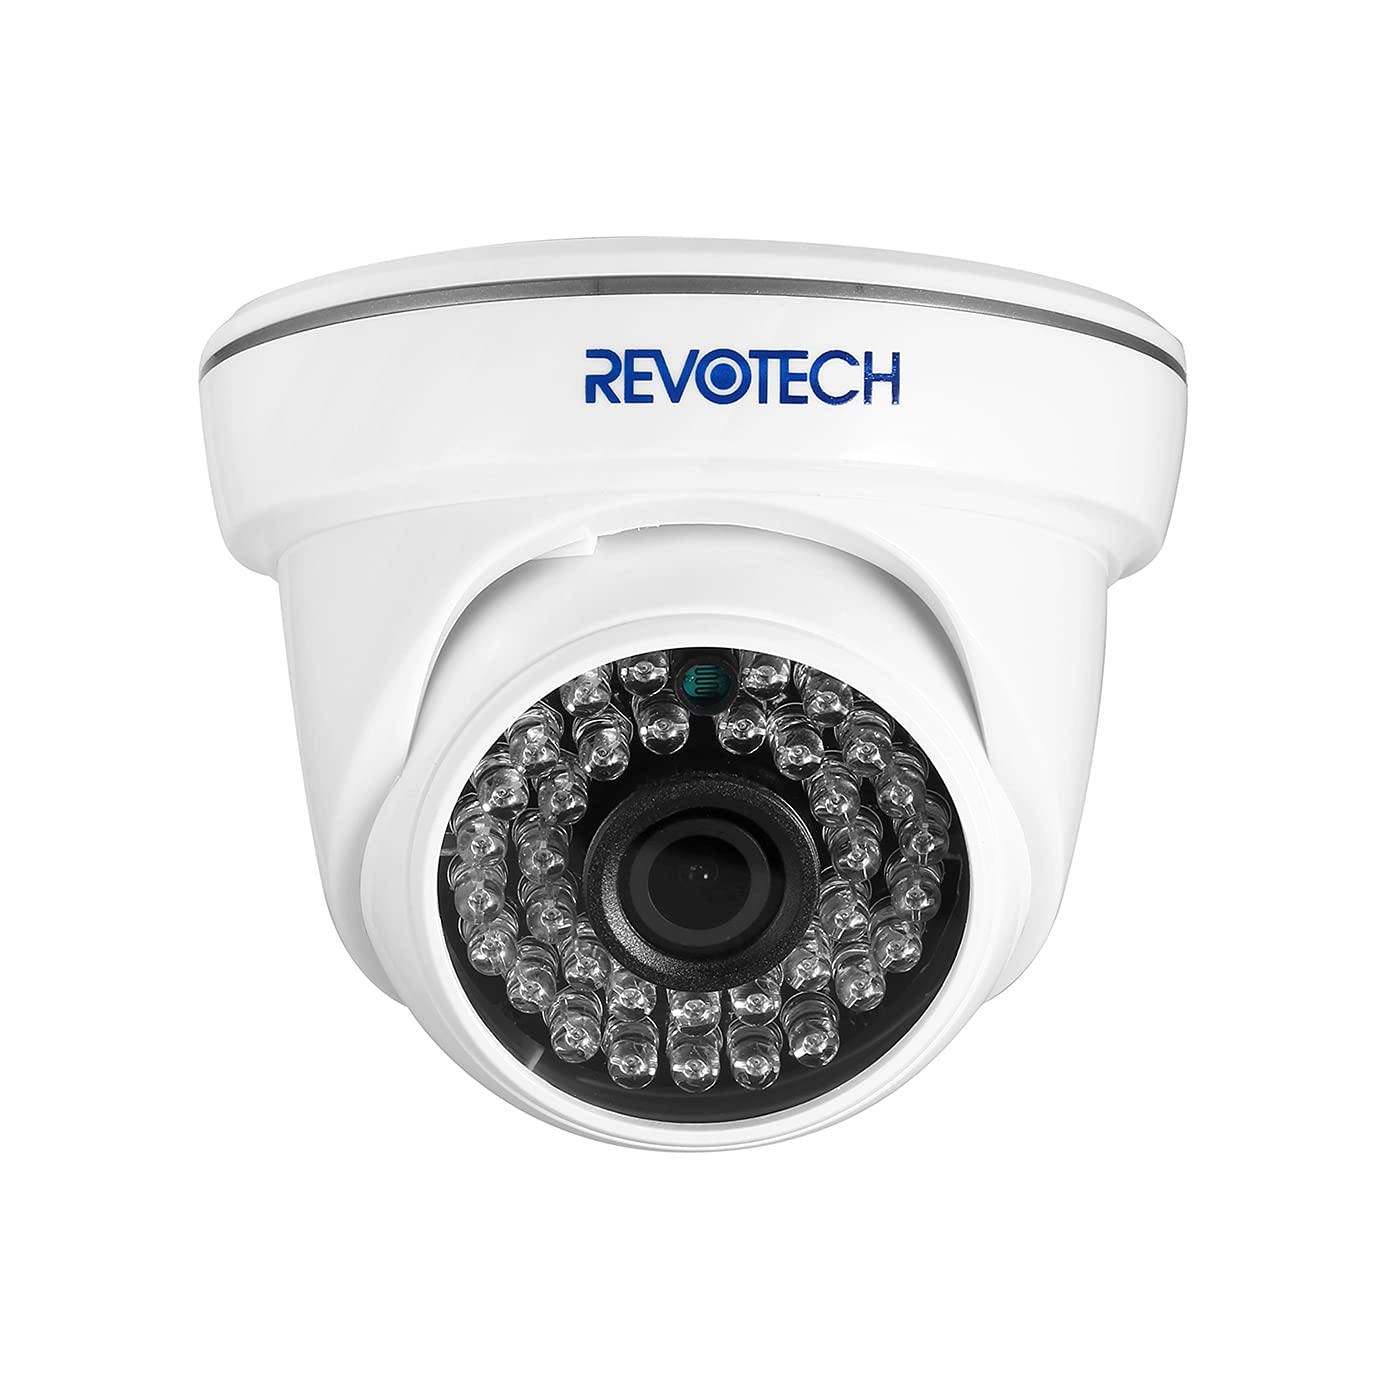 Revotech Dome Sicherheits POE IP Kamera, HD 3MP Indoor CCTV Videokamera IR Nachtsicht 3,6 mm Objektiv P2P H.265 (I3012-P Weiß)